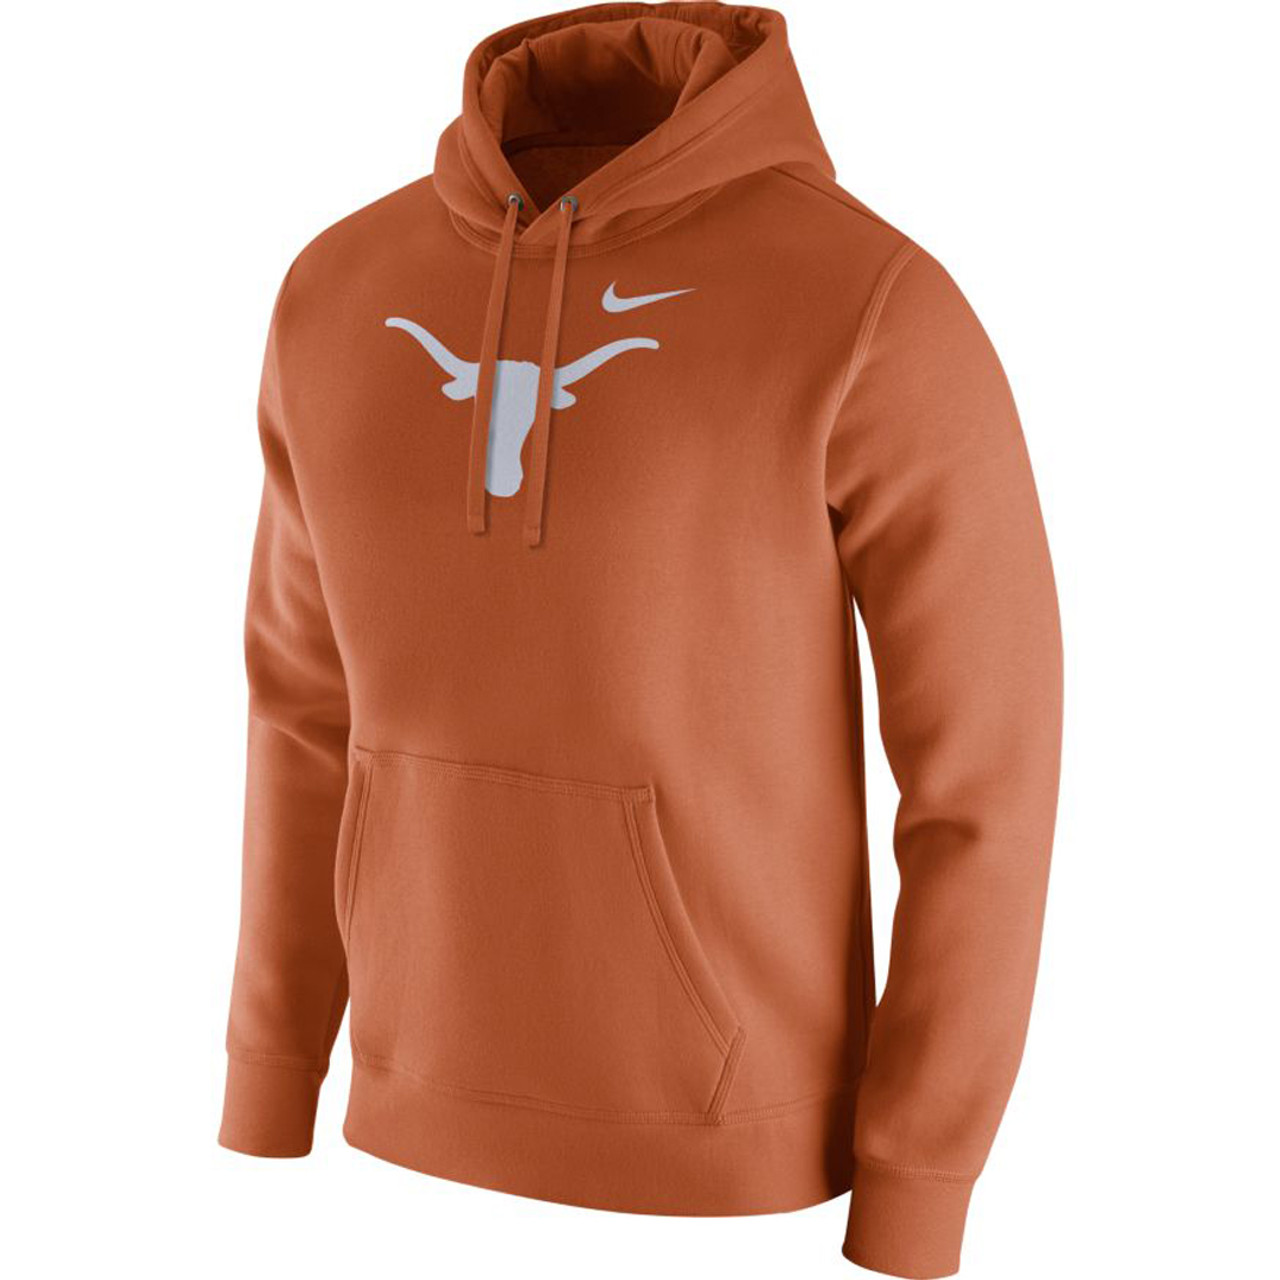 Afstoting bijtend Plantage Nike Team Men's College Club Fleece Texas Hoodie - Desert Orange - TYLER'S